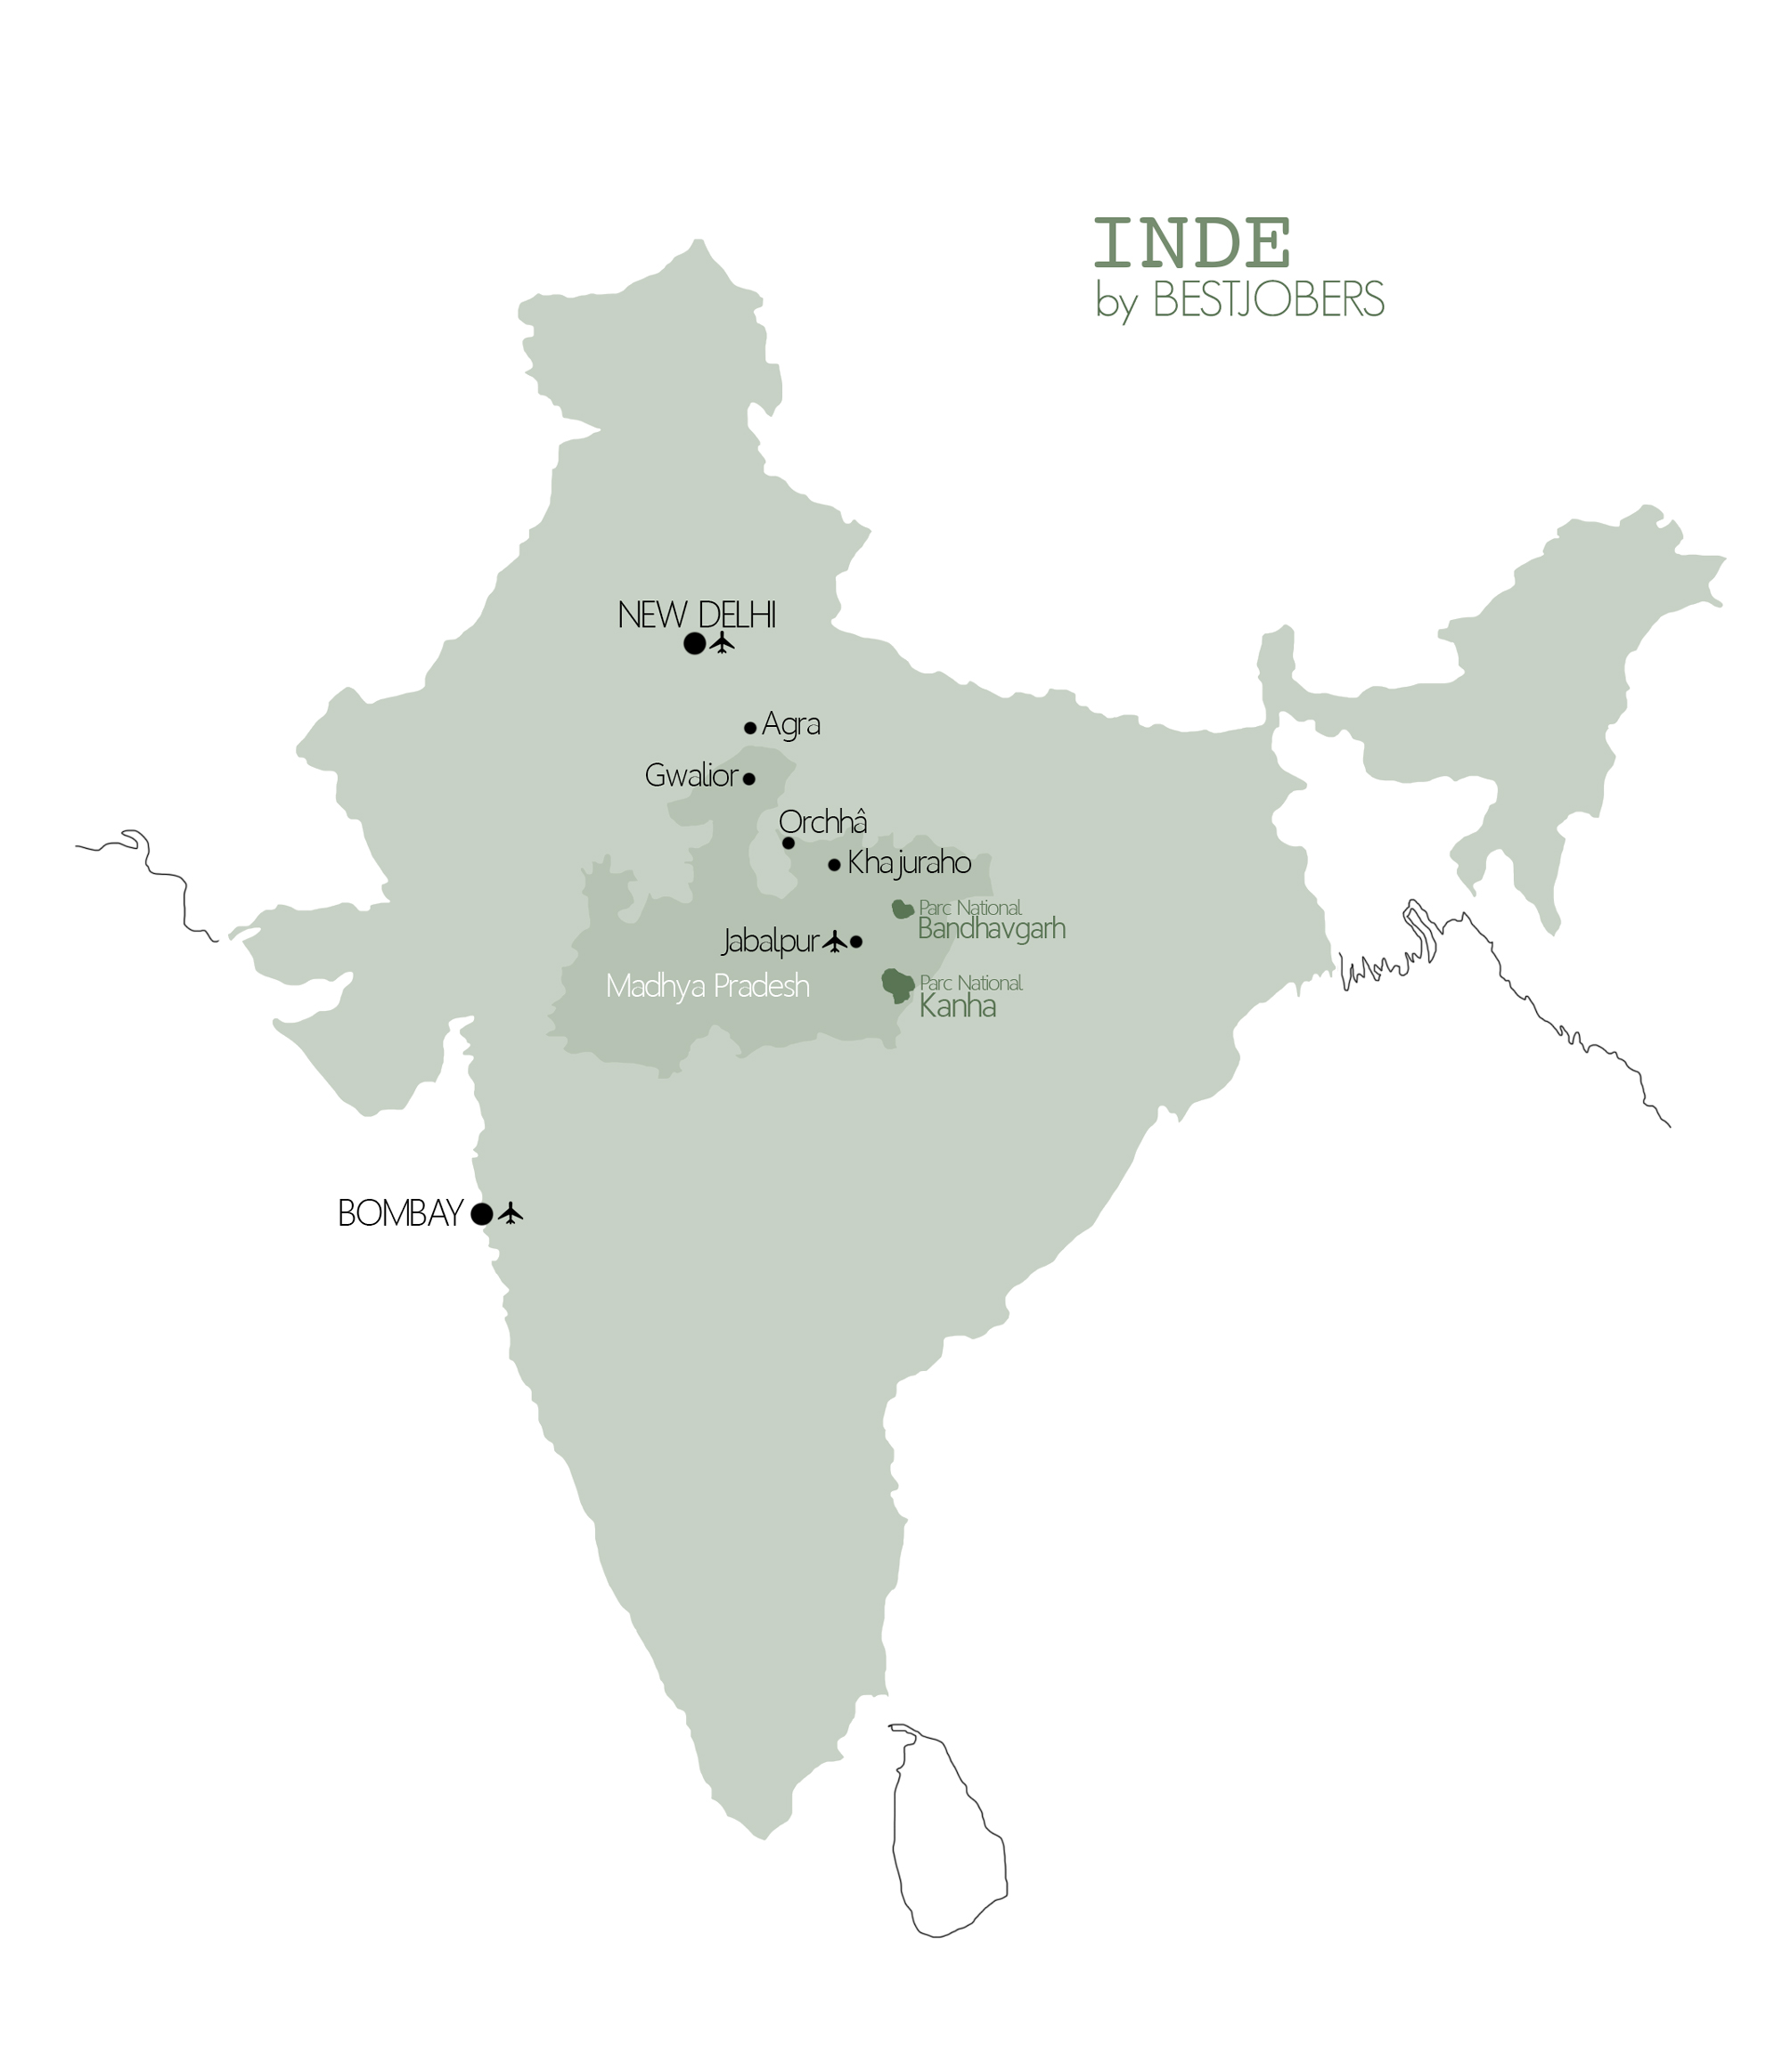 Carte Madhya Pradesh, Inde by Bestjobers